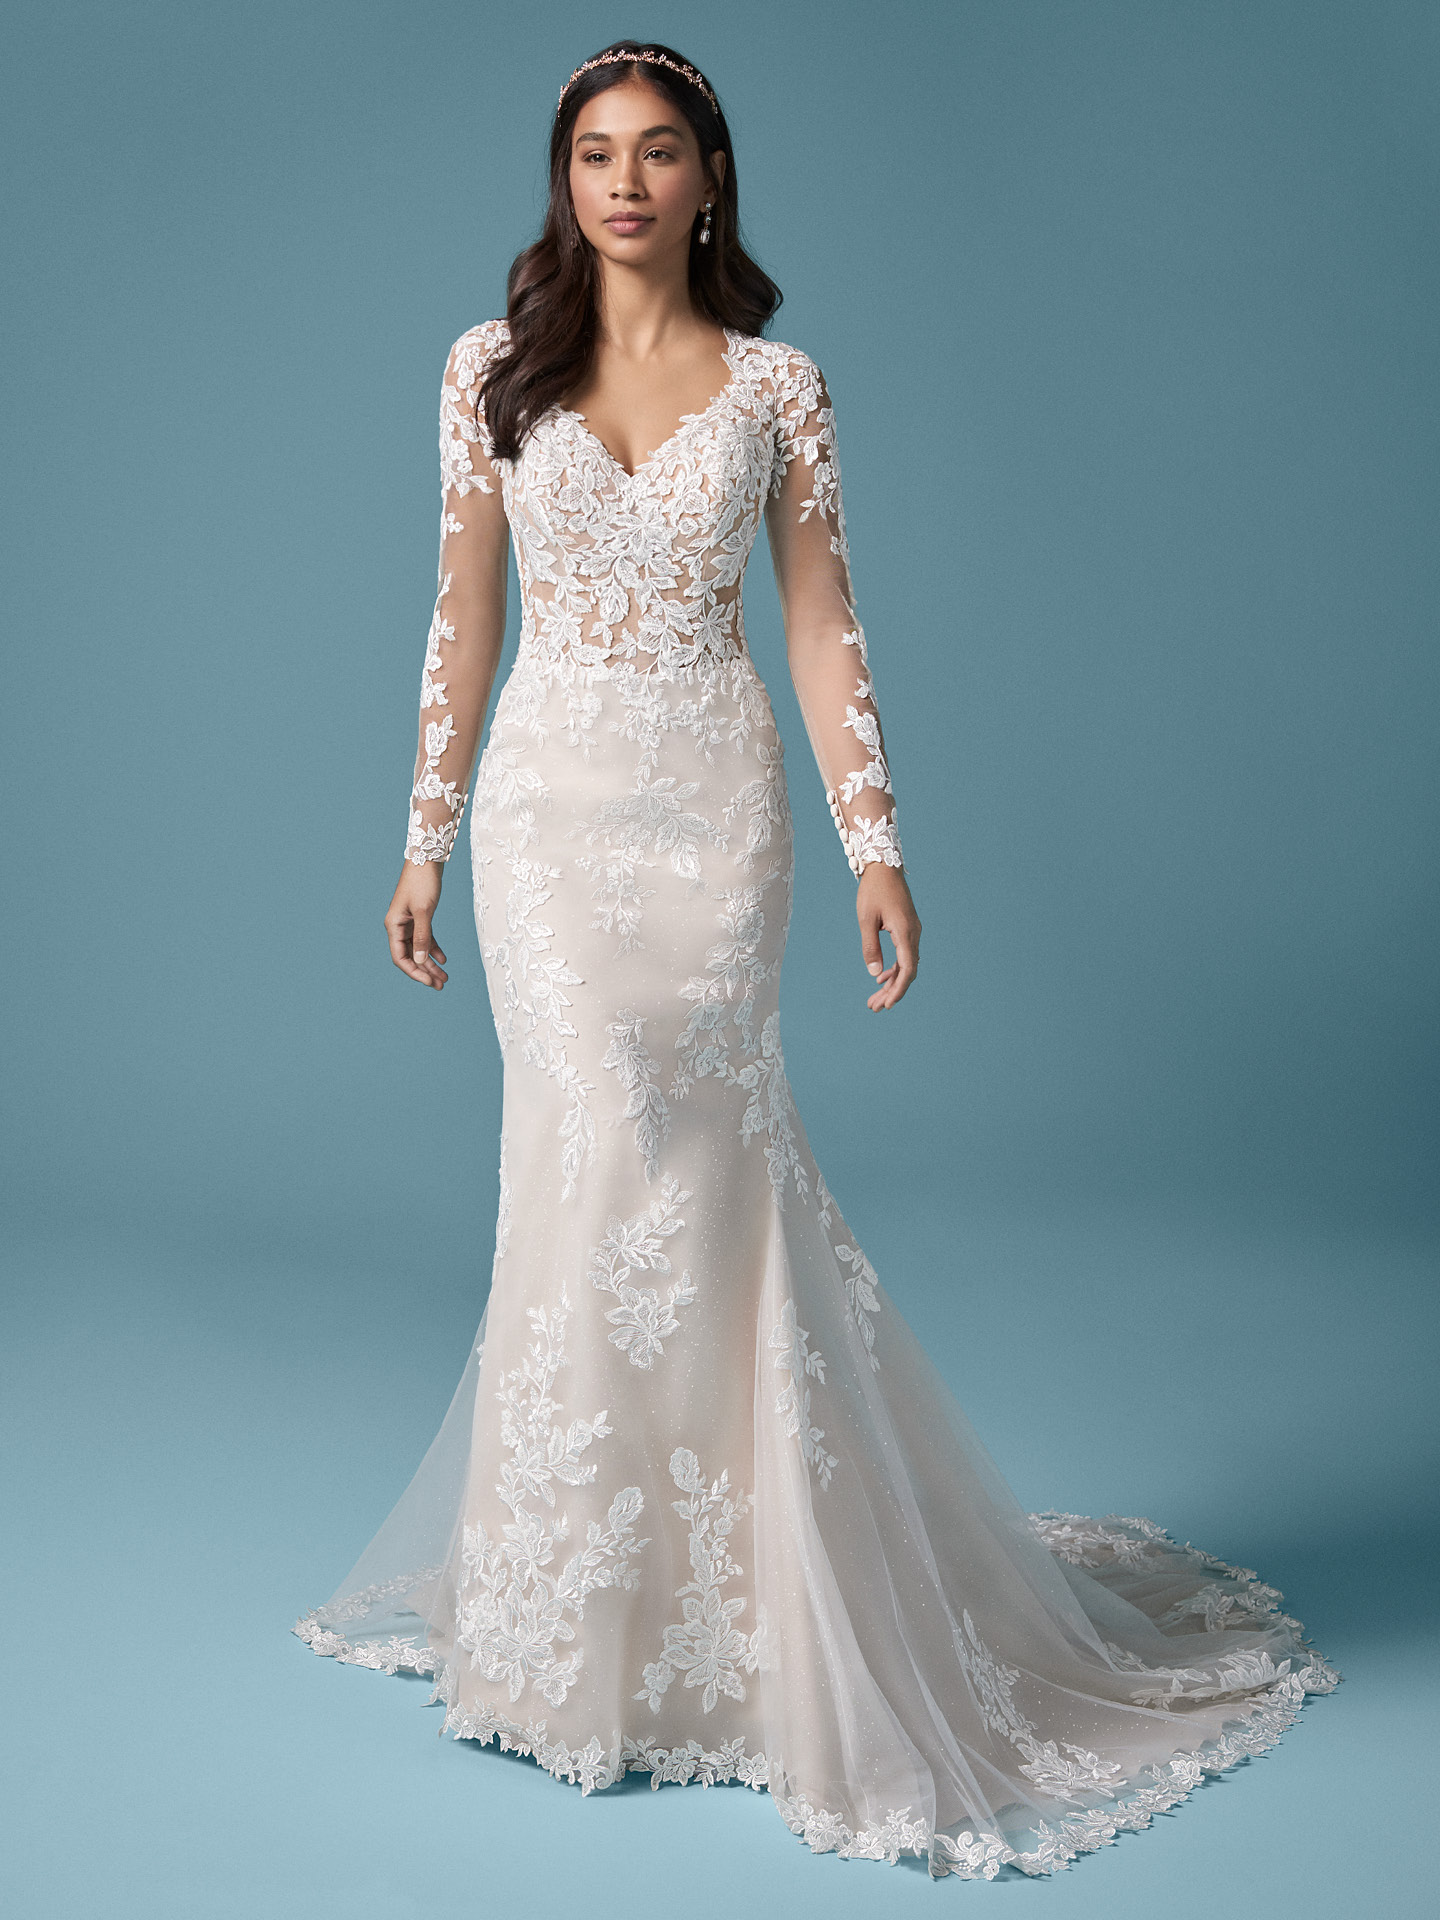 Modèle portant une robe de mariée fourreau à manches en dentelle Illusion appelée Francesca par Maggie Sottero